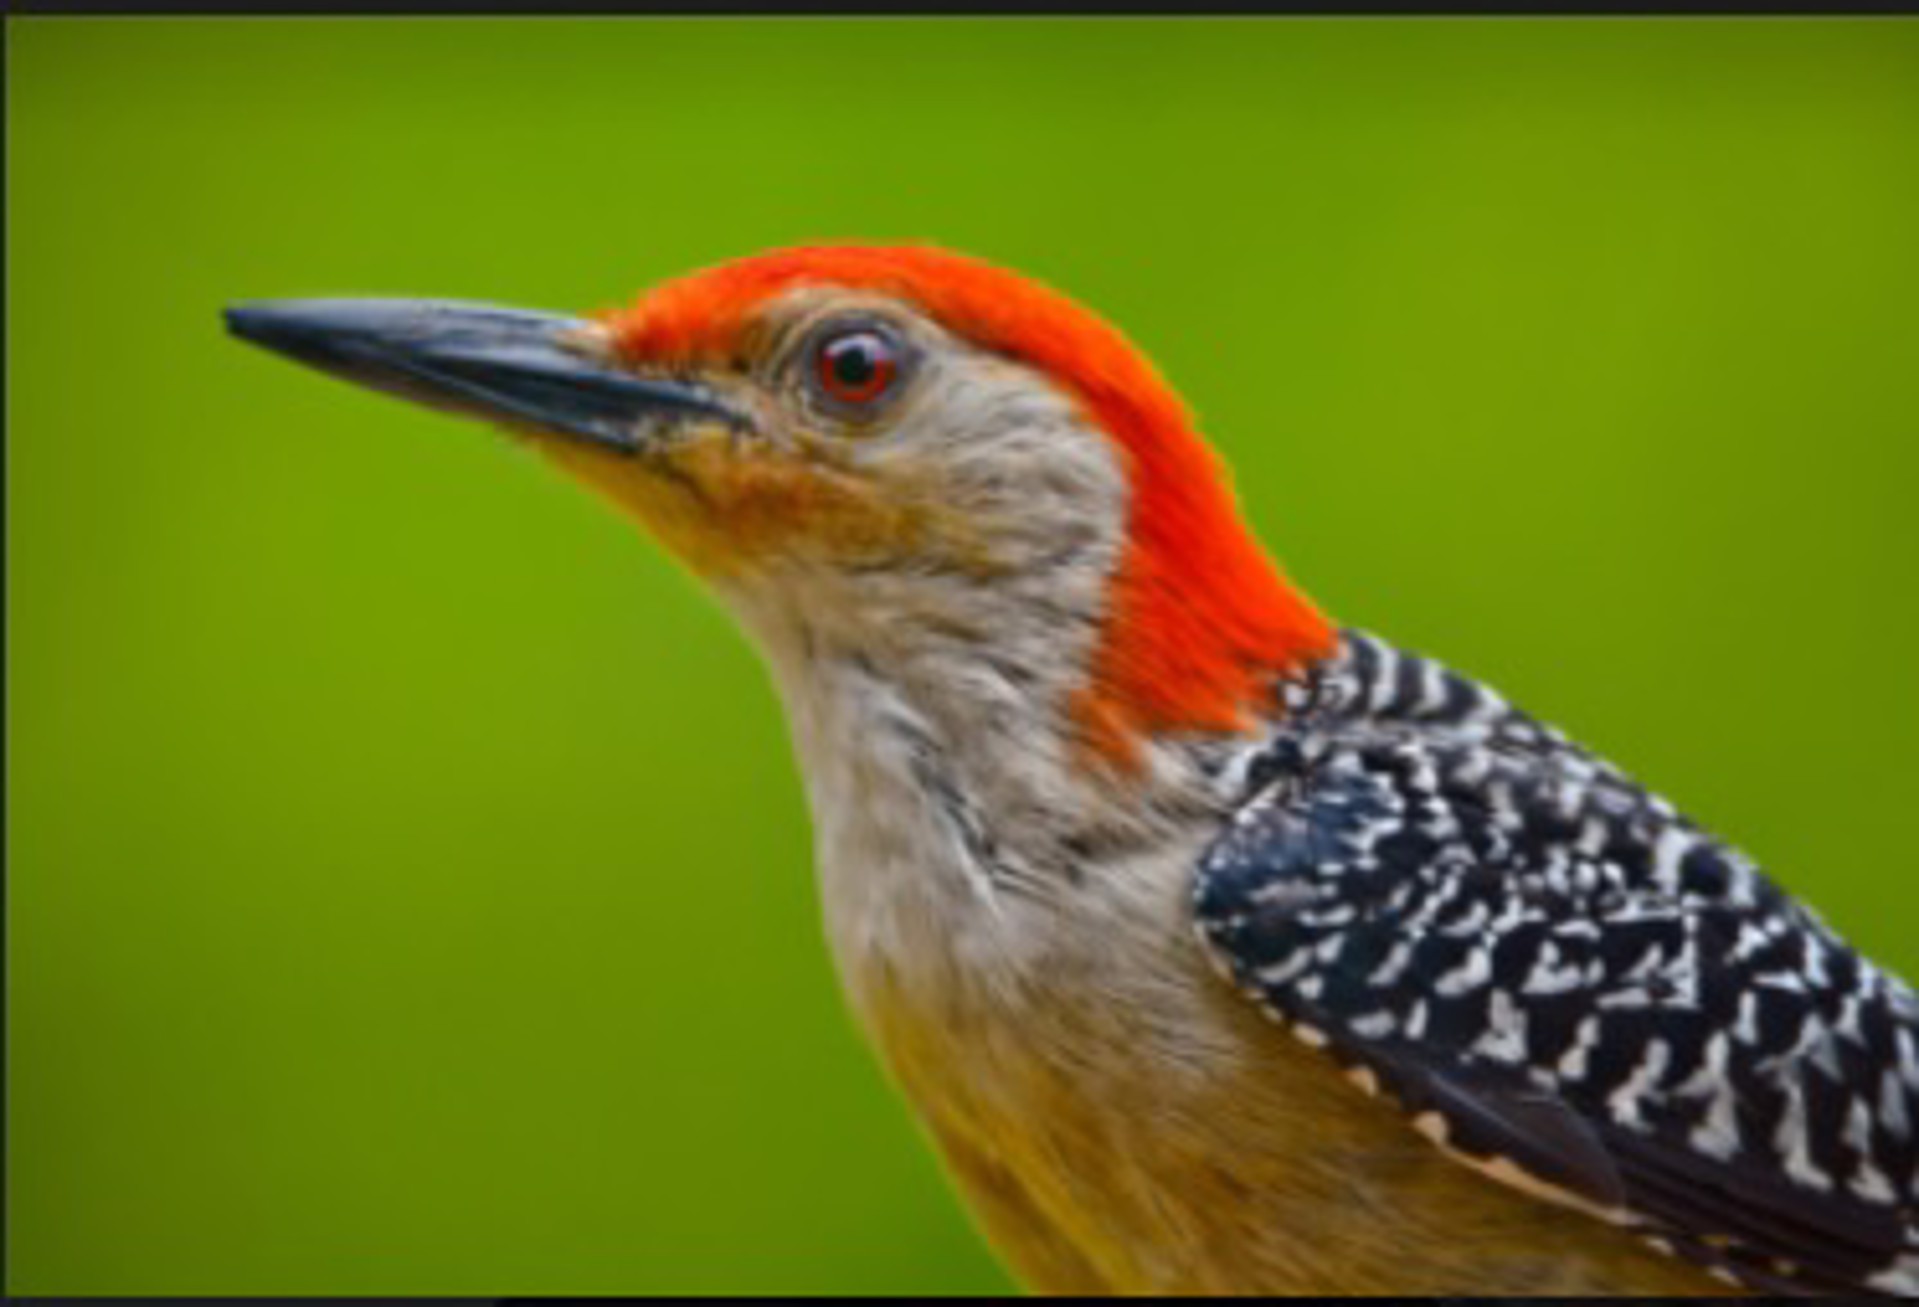 Red-bellied Woodpecker by Soumaya Kar